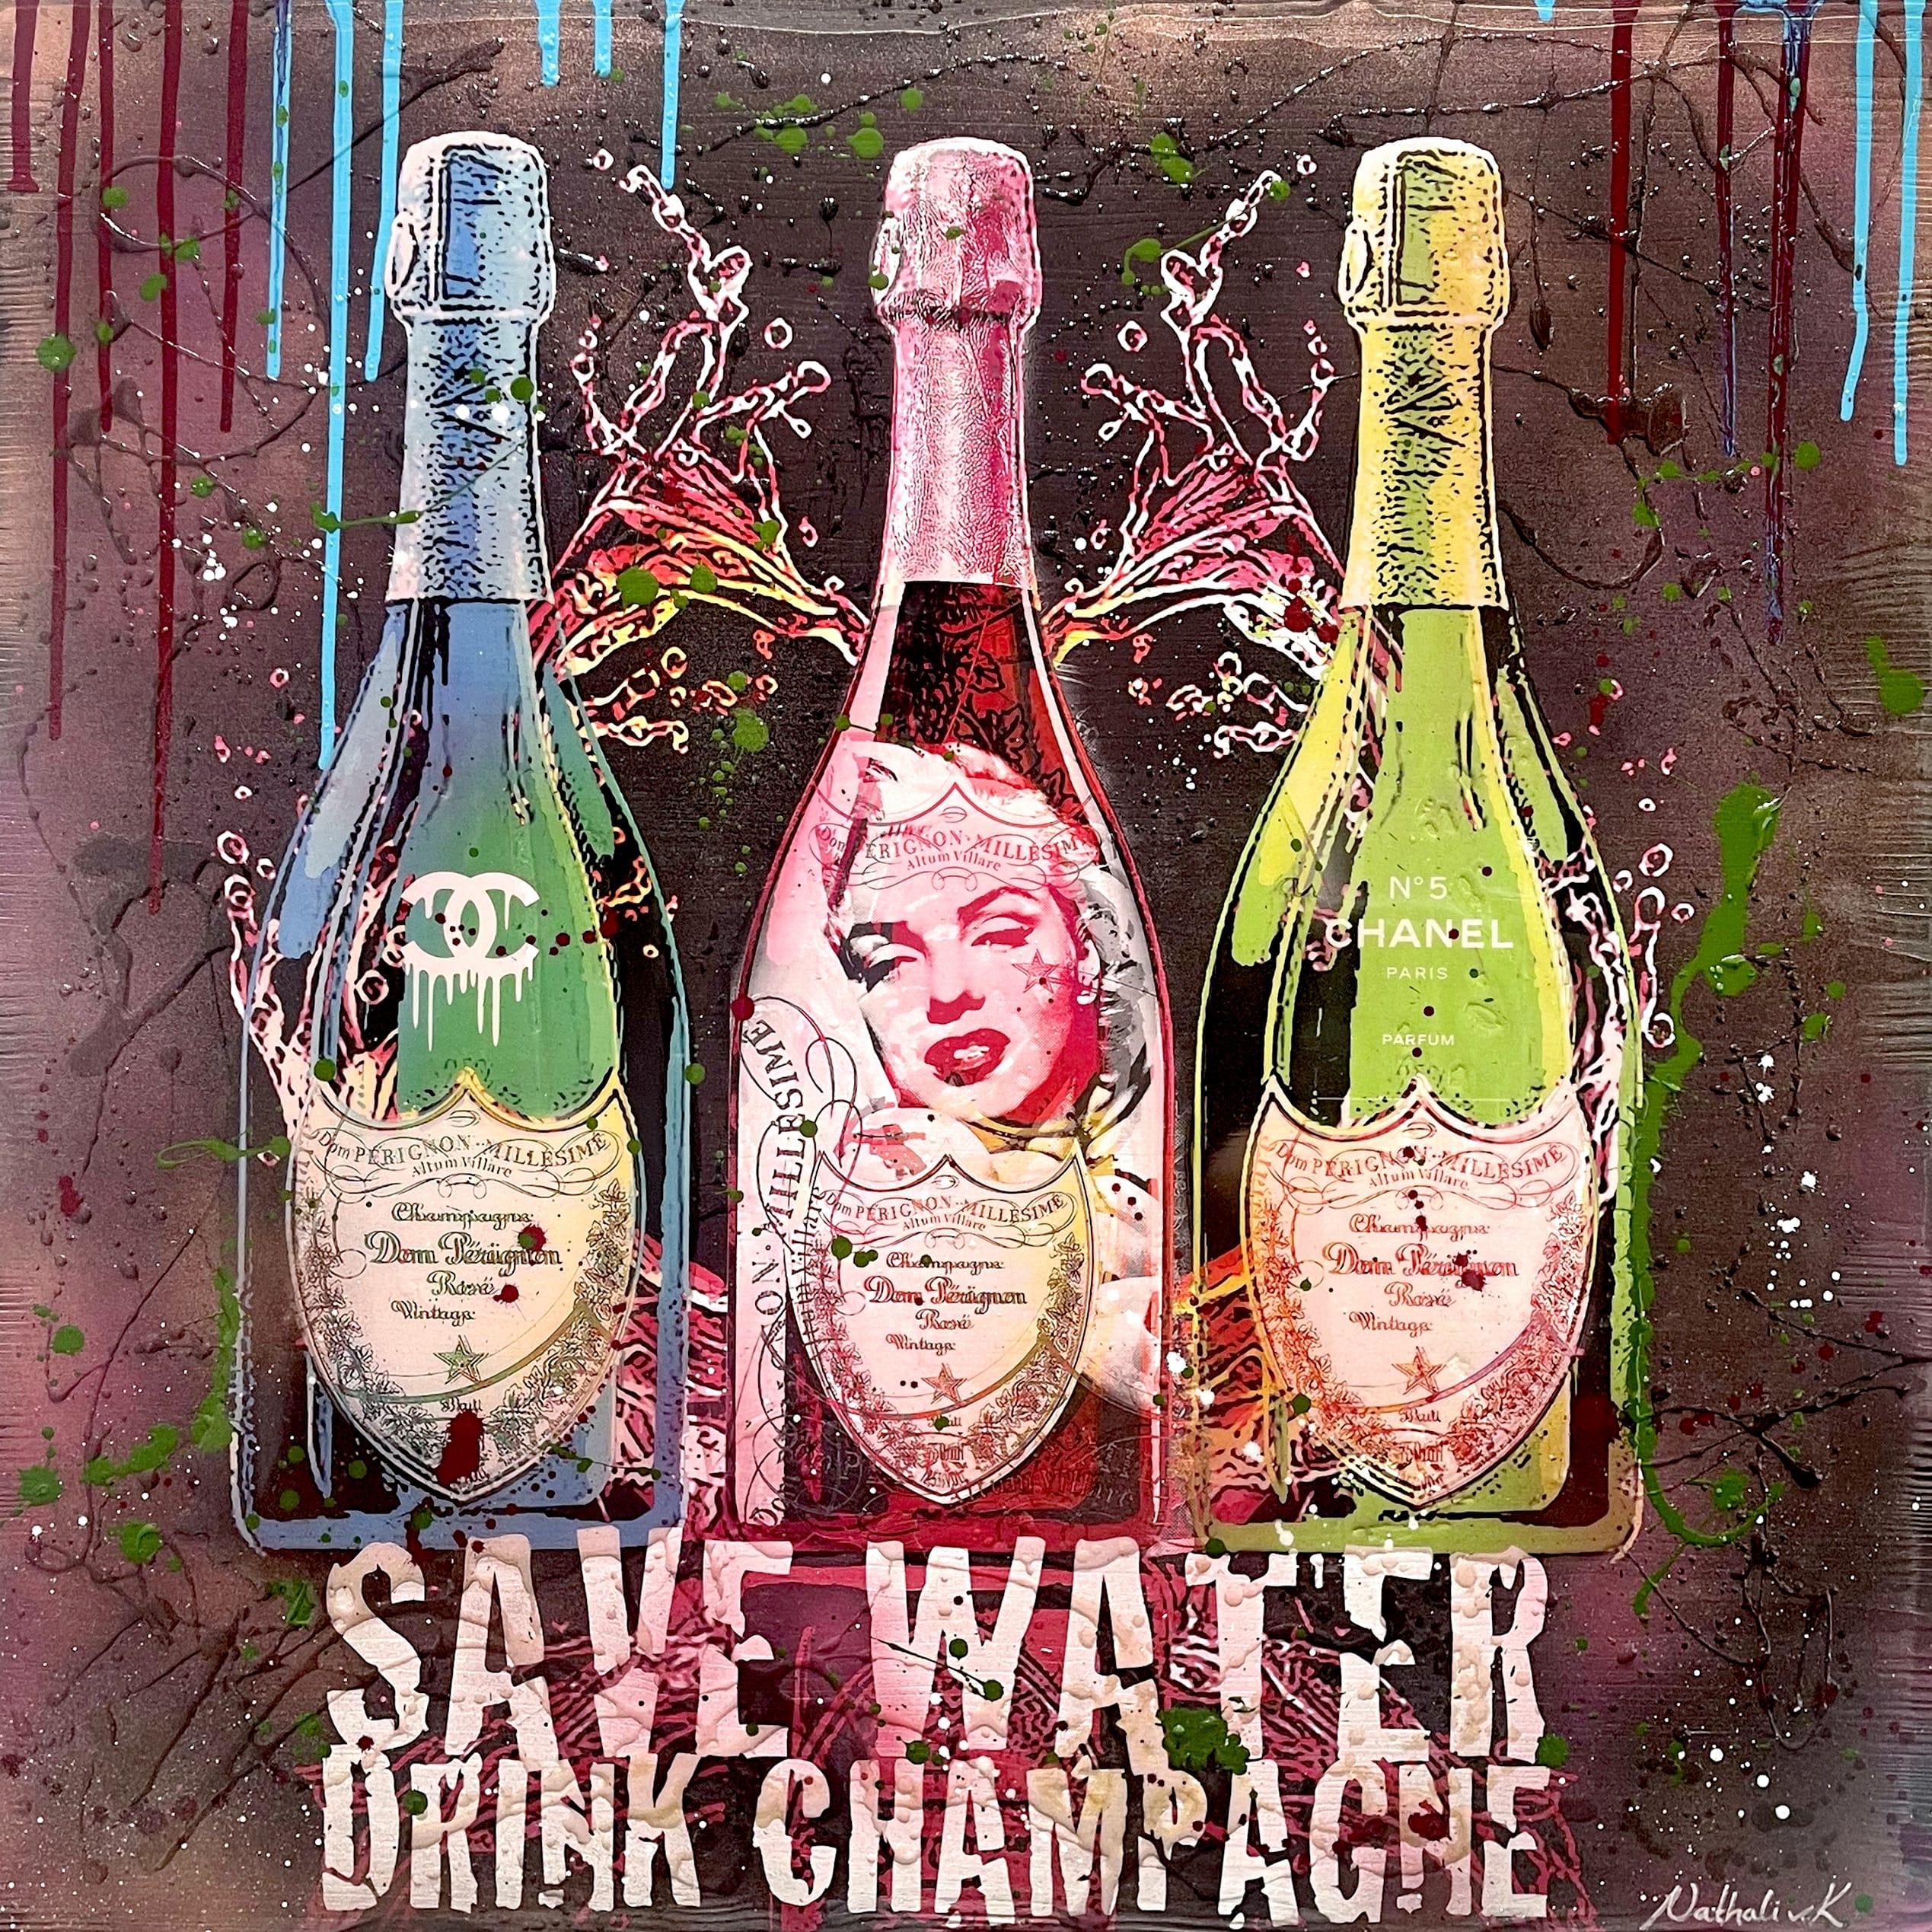 Nathali von Kretschmann Pop-Up Painting Save Water Drink Champagne three bottles of Dom Perignon